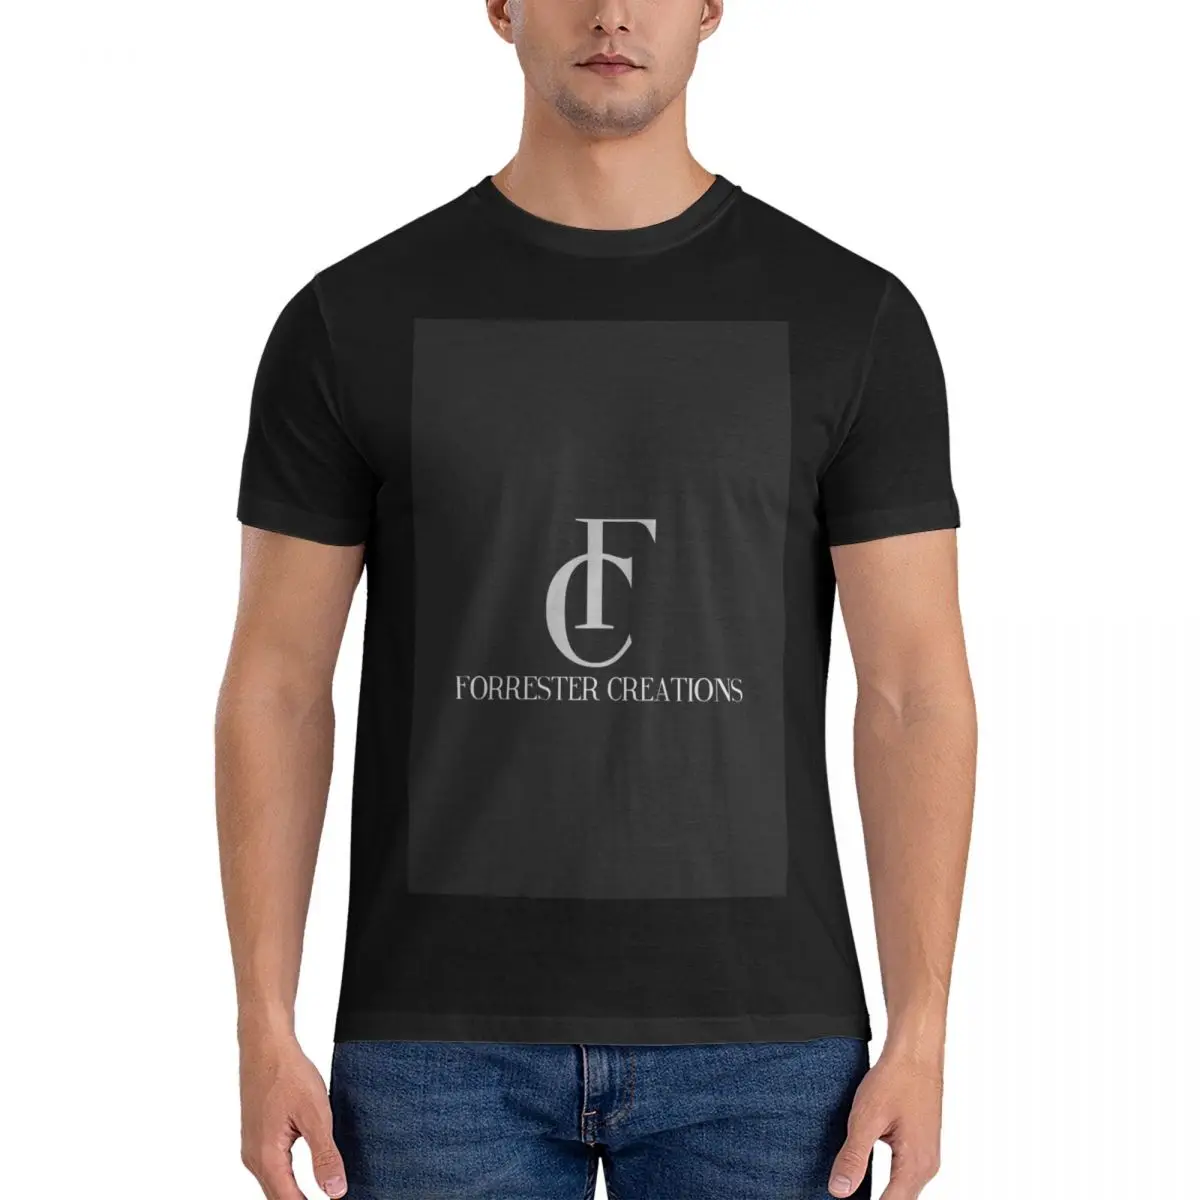 Forrester Creations - Смелая и красивая рубашка, Незаменимая футболка, мужские графические футболки, забавные мужские высокие футболки